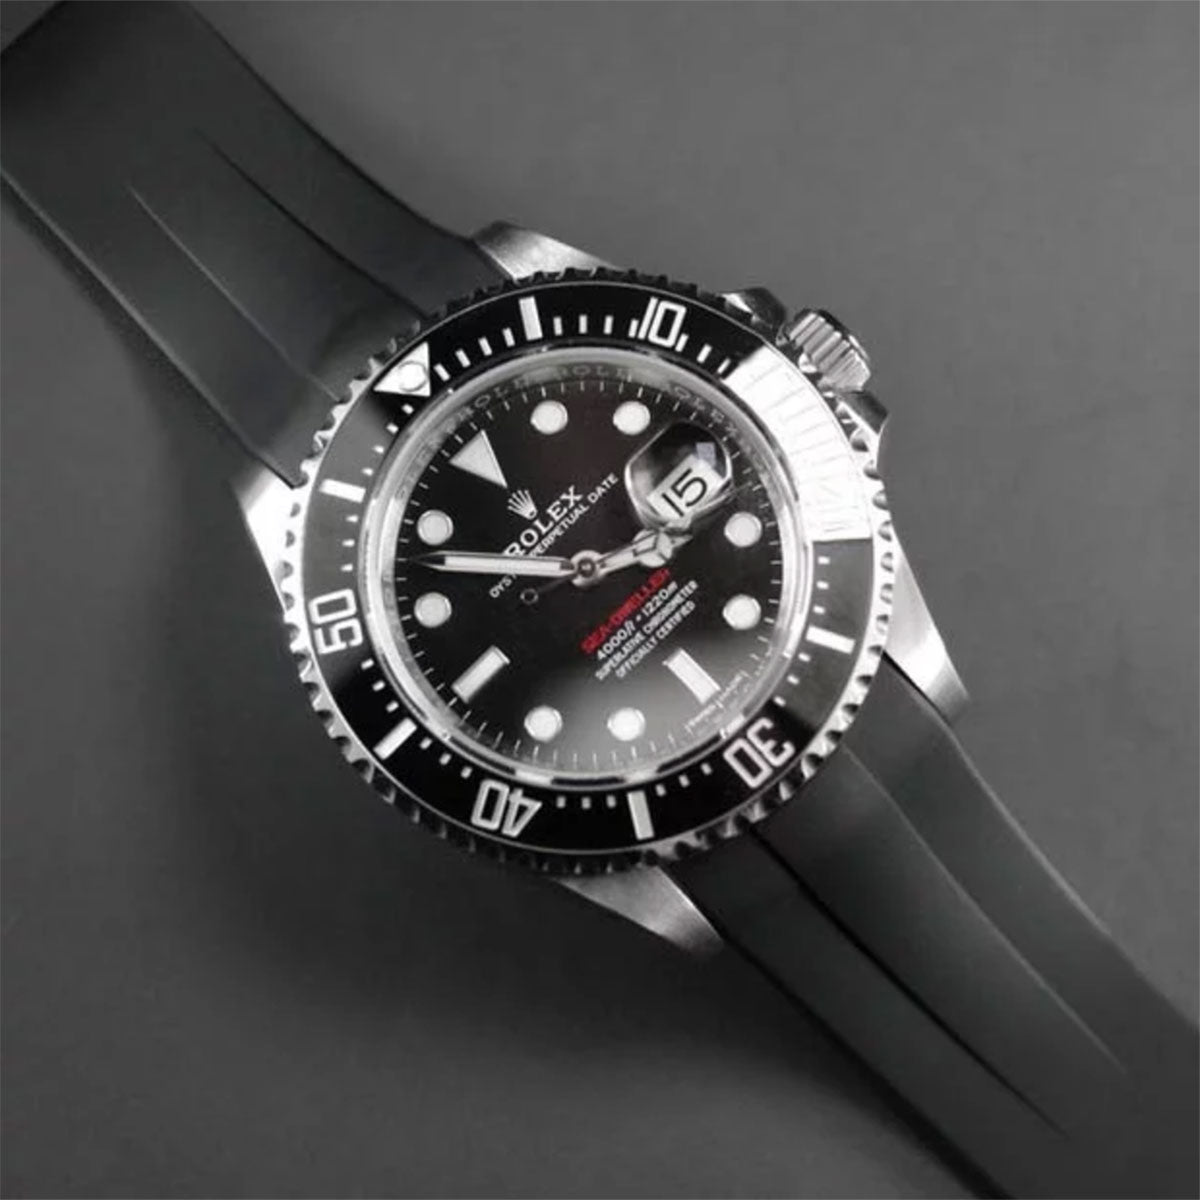 Rolex - Rubber B - Bracelet caoutchouc pour Sea-Dweller 43mm - Série boucle ardillon ref. 126600 - watch band leather strap - ABP Concept -